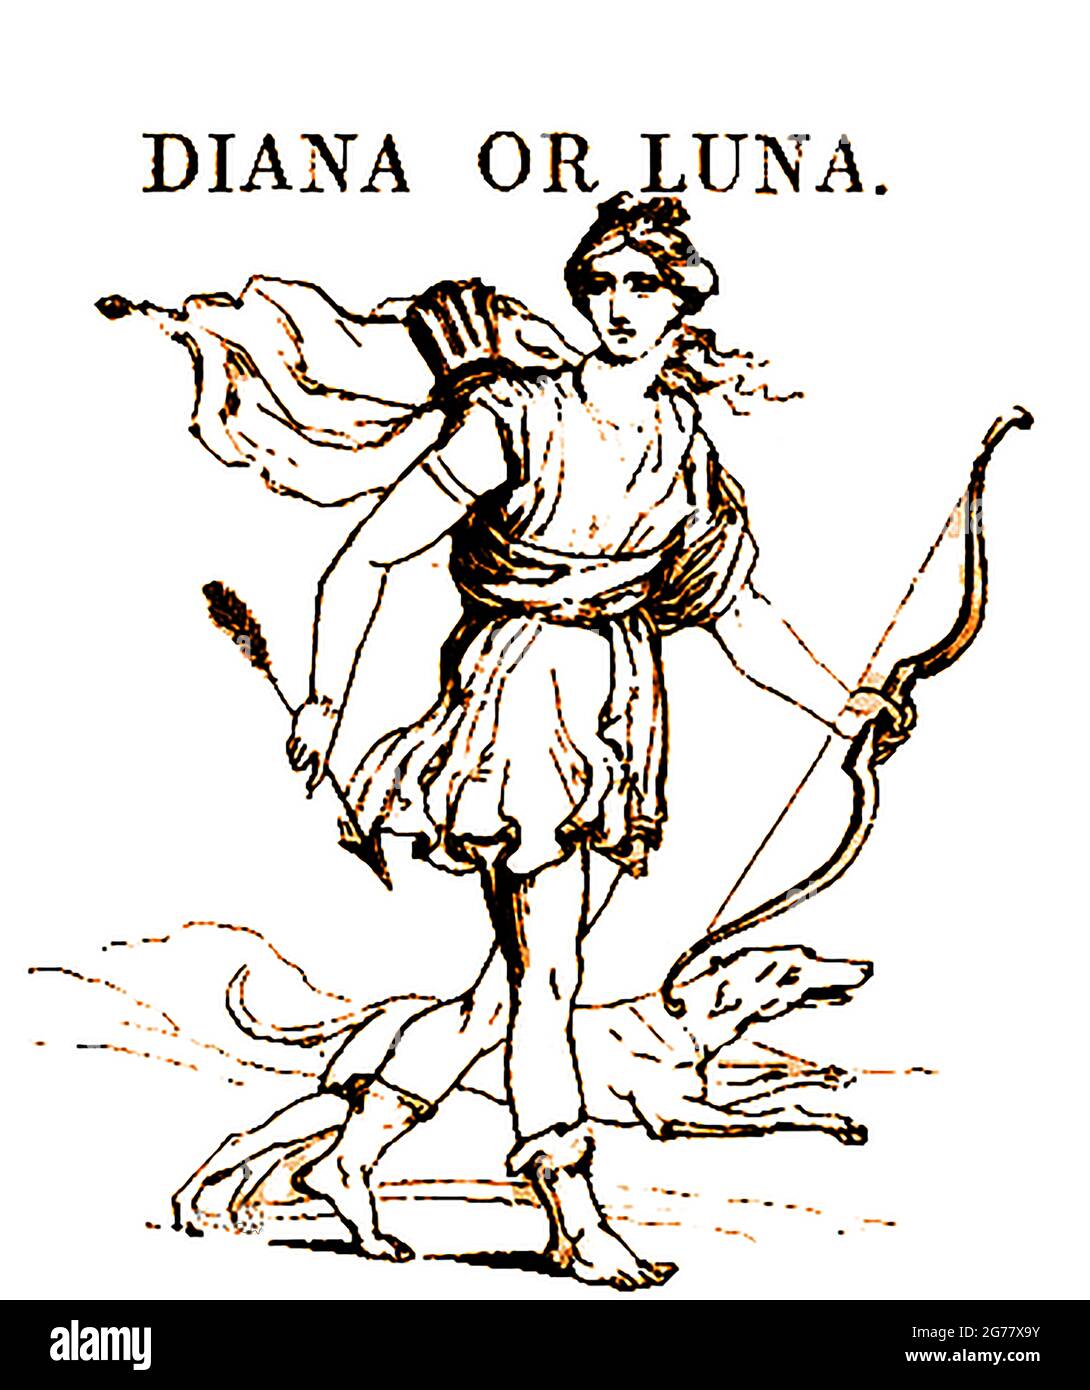 Una representación en 1839 de la figura mitológica griega y romana Diana (a veces llamada la diosa de la caza) que todavía es venerada en el neopaganismo romano moderno, Stregheria (la religión vieja), y Wicca. Figuras mitológicas equivalentes o asociadas a Diana incluyen Artemis, Egeria la ninfa de agua, Hecate, Virbio y la luna, (Luna y/o Selene). También está asociada con el campo, el parto, las zonas boscosas, las cruces (especialmente las cruces de 3 vías), el camino al inframundo, Foto de stock